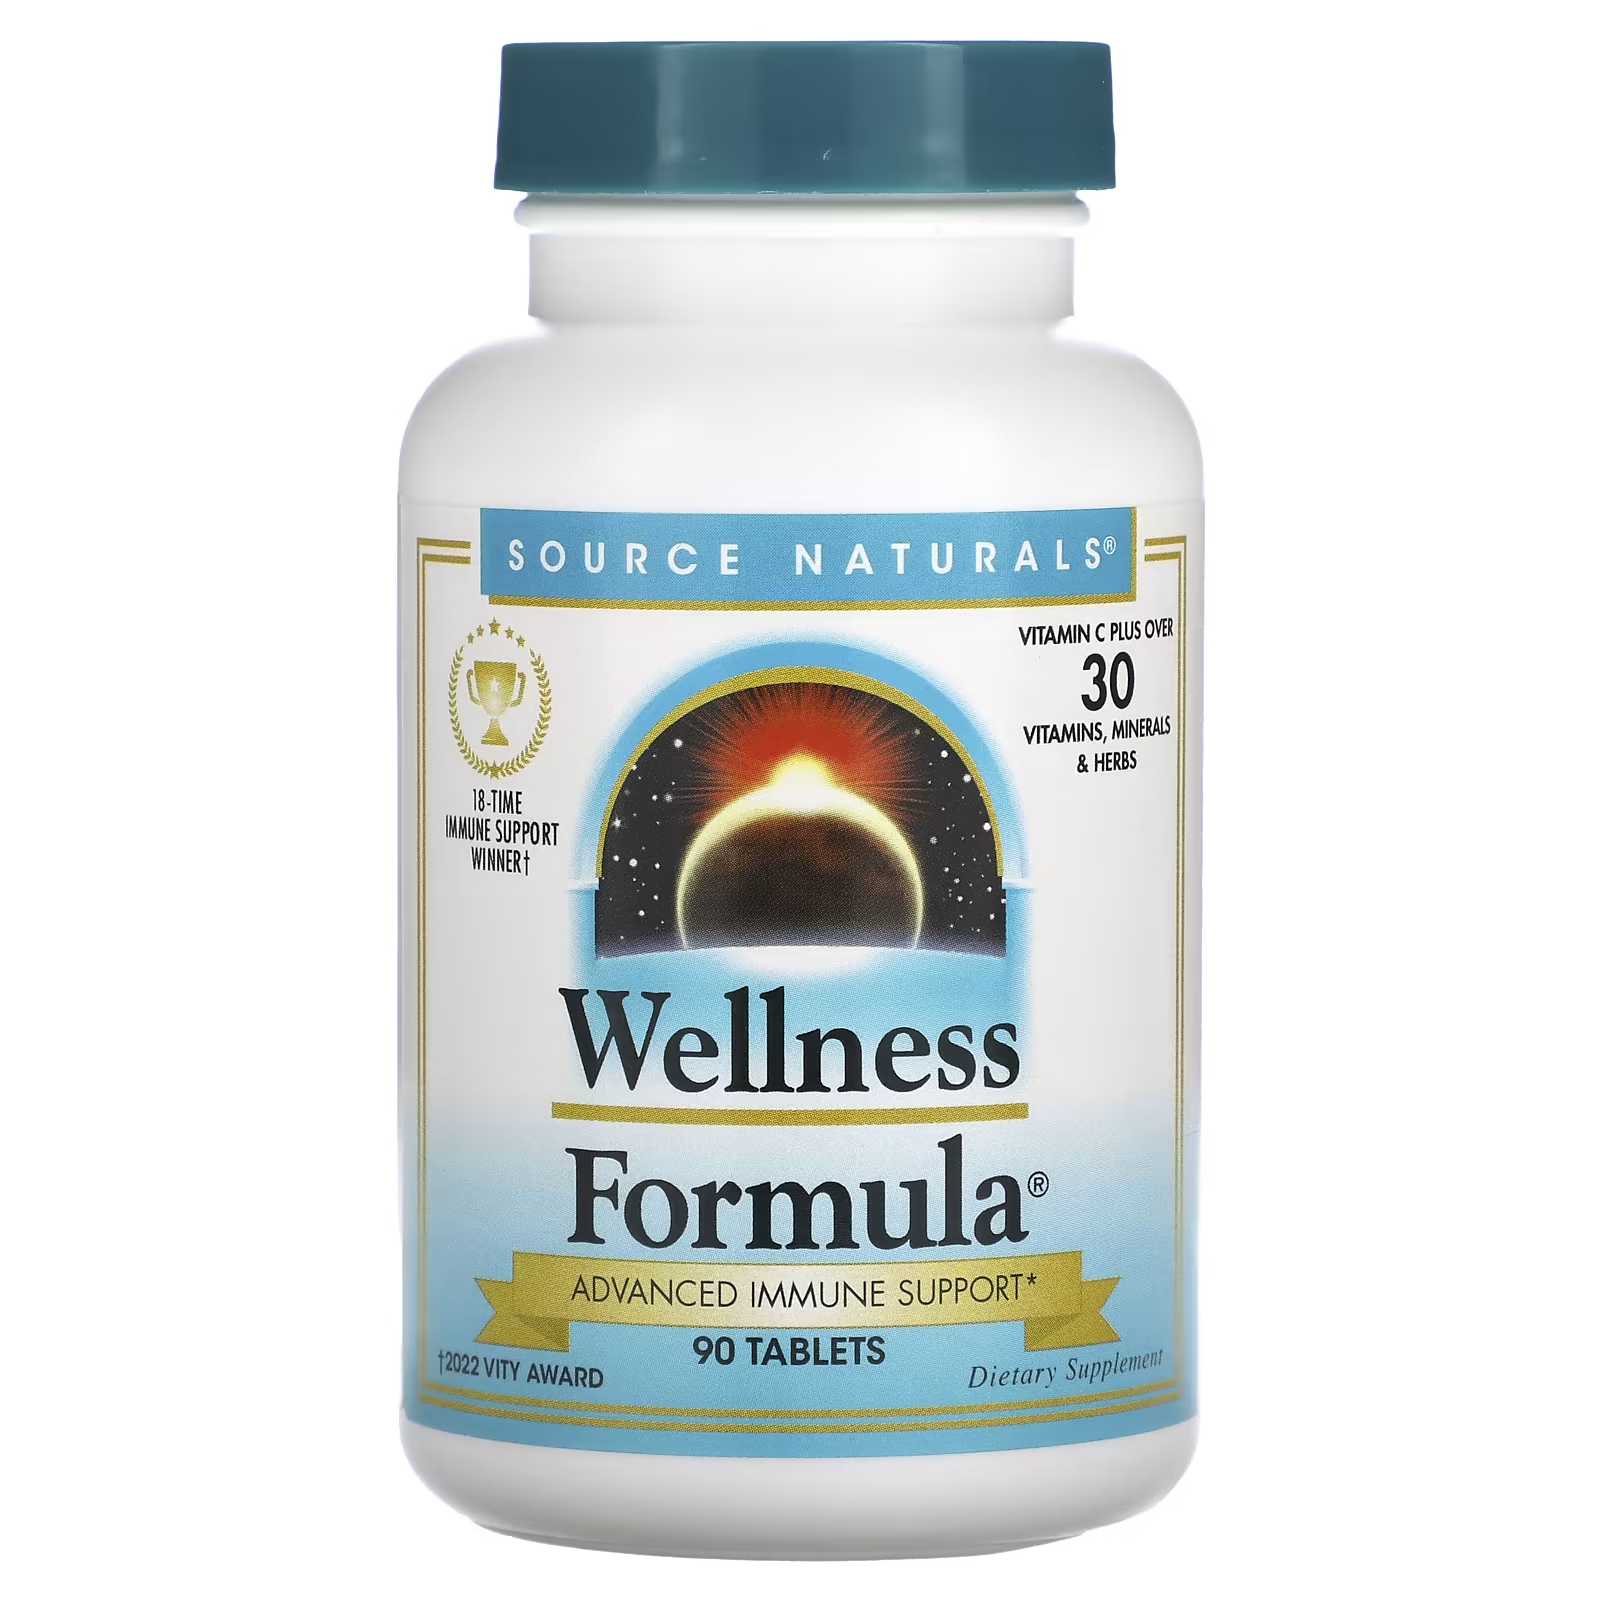 Source Naturals Wellness Formula Advanced Immune Support 90 таблеток цена и фото